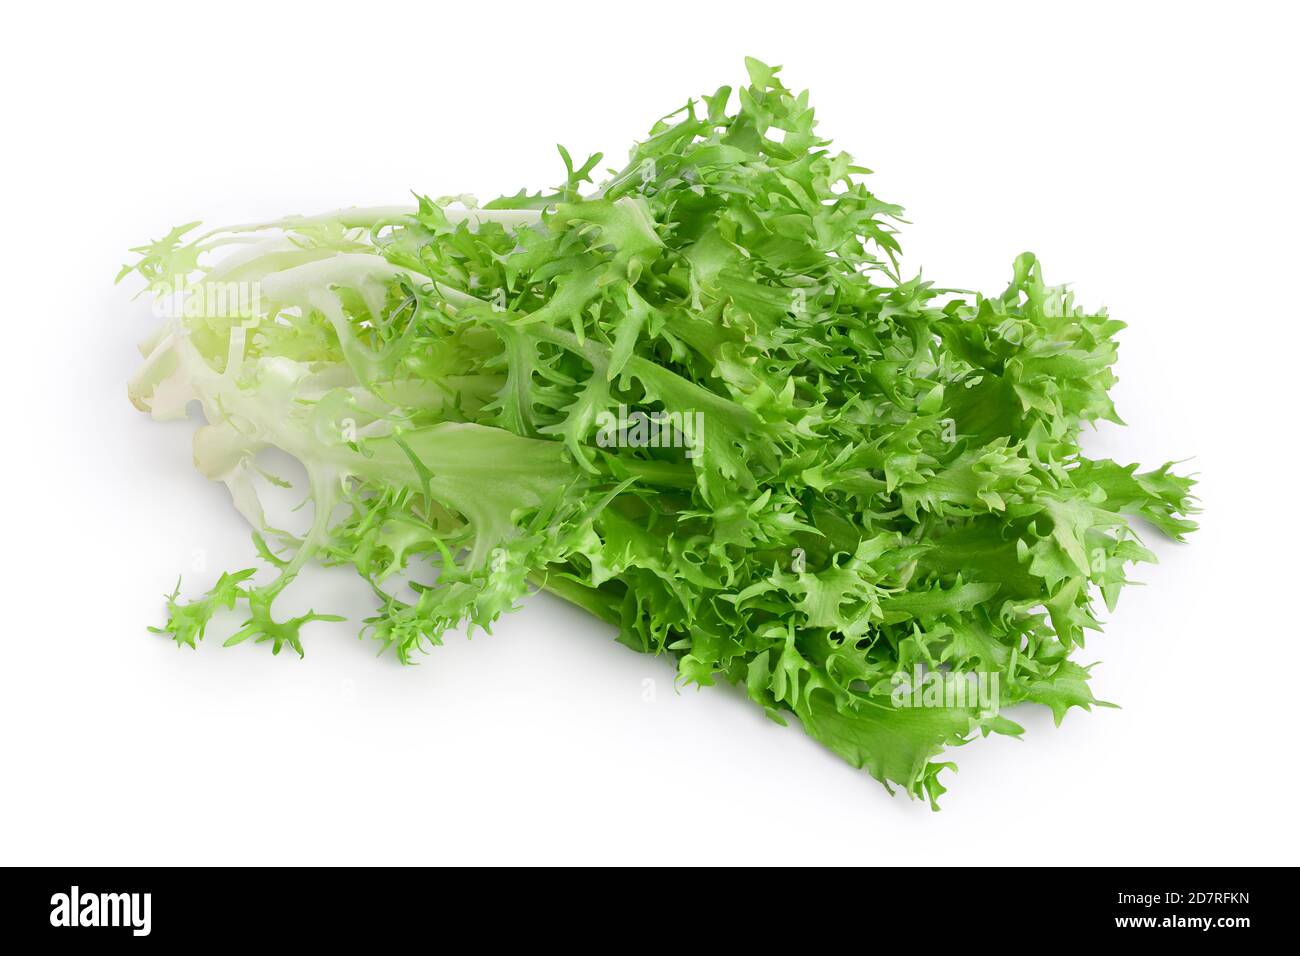 Frische grüne Blätter Endive Frisee Chicorée Salat isoliert auf Weißer Hintergrund mit Beschneidungspfad und voller Schärfentiefe Stockfoto